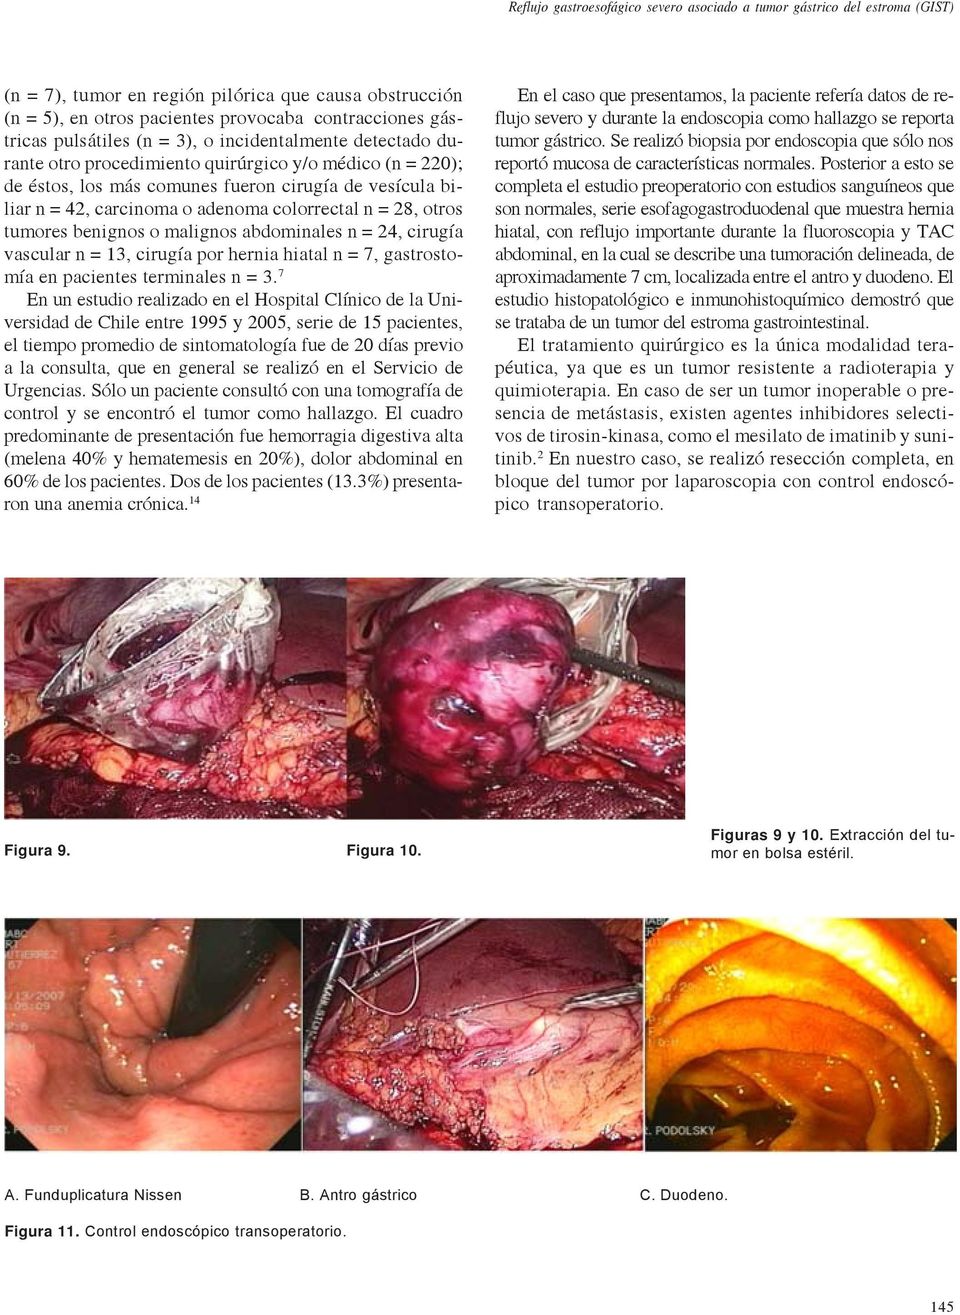 colorrectal n = 28, otros tumores benignos o malignos abdominales n = 24, cirugía vascular n = 13, cirugía por hernia hiatal n = 7, gastrostomía en pacientes terminales n = 3.